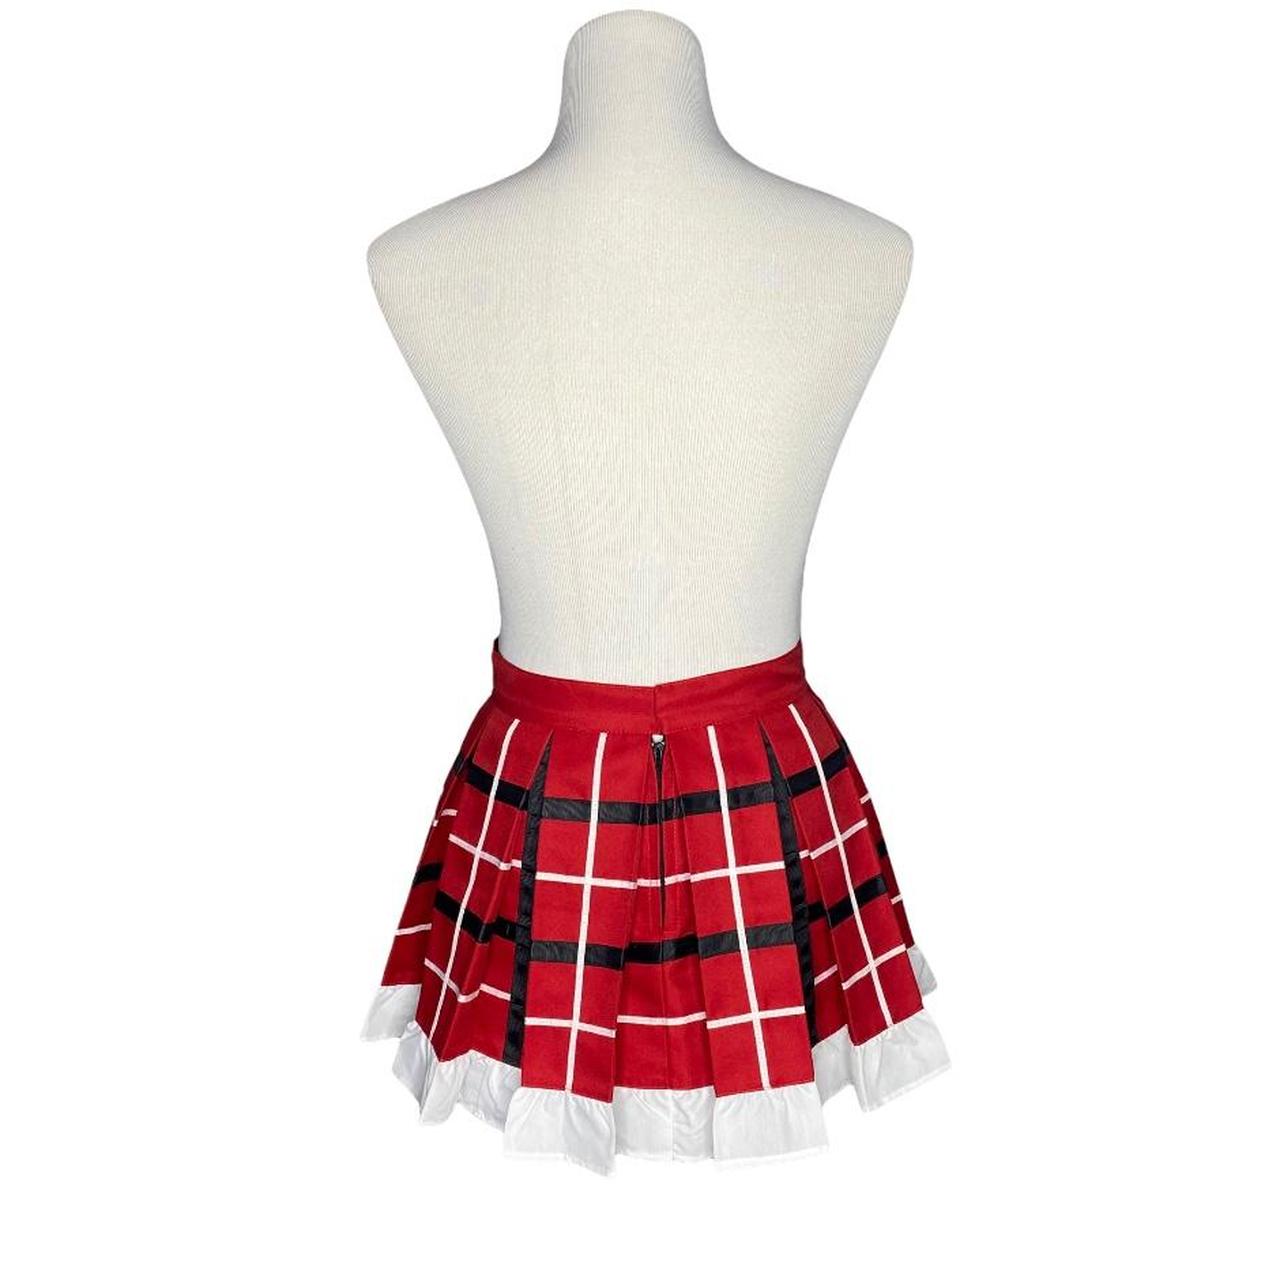 Product Image 2 - Handmade Pleated Mini Skirt Red,